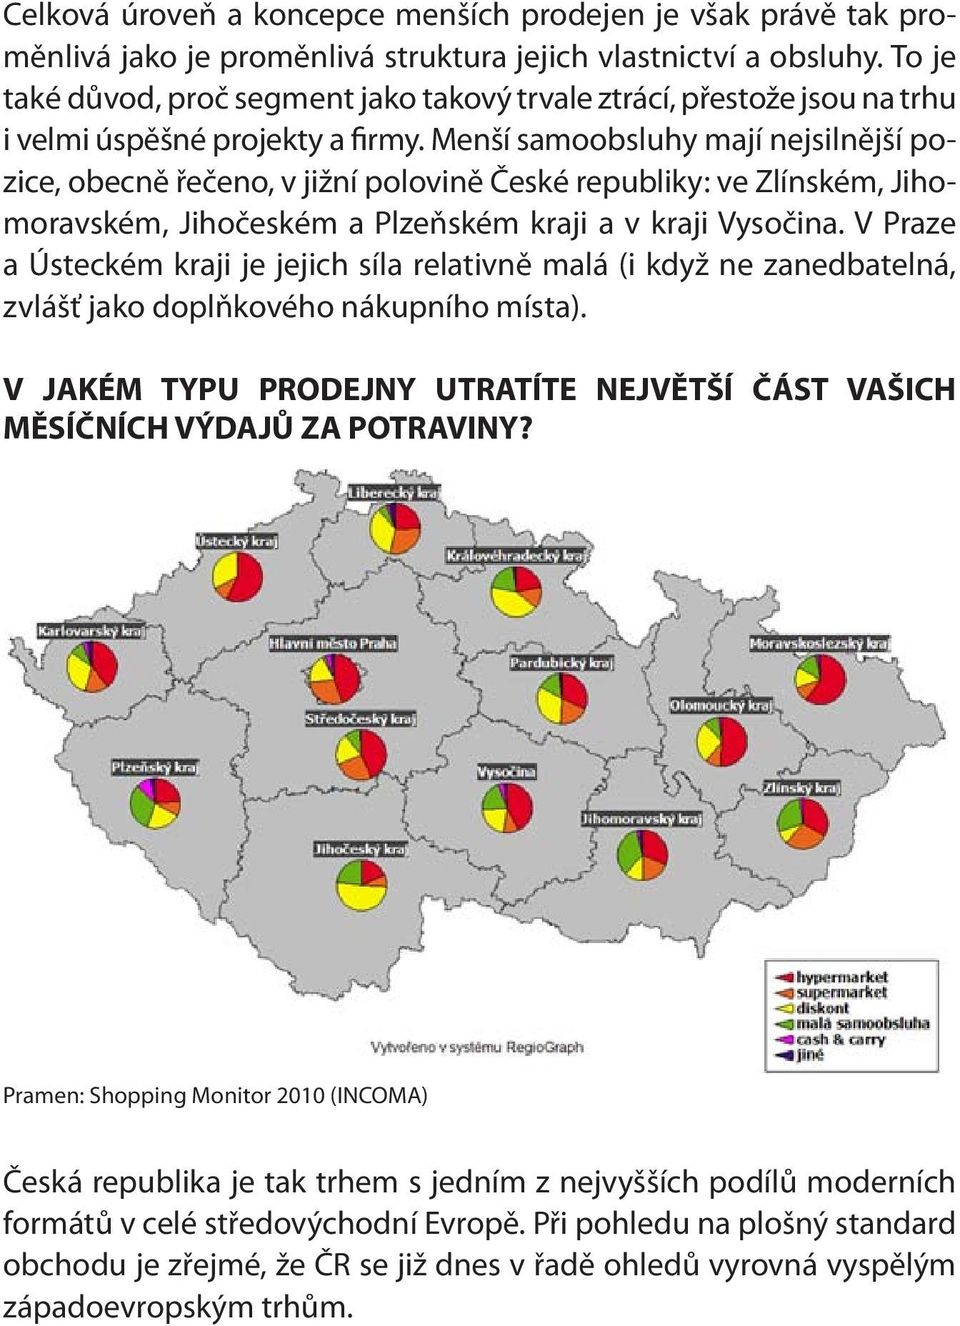 Menší samoobsluhy mají nejsilnější pozice, obecně řečeno, v jižní polovině České republiky: ve Zlínském, Jihomoravském, Jihočeském a Plzeňském kraji a v kraji Vysočina.